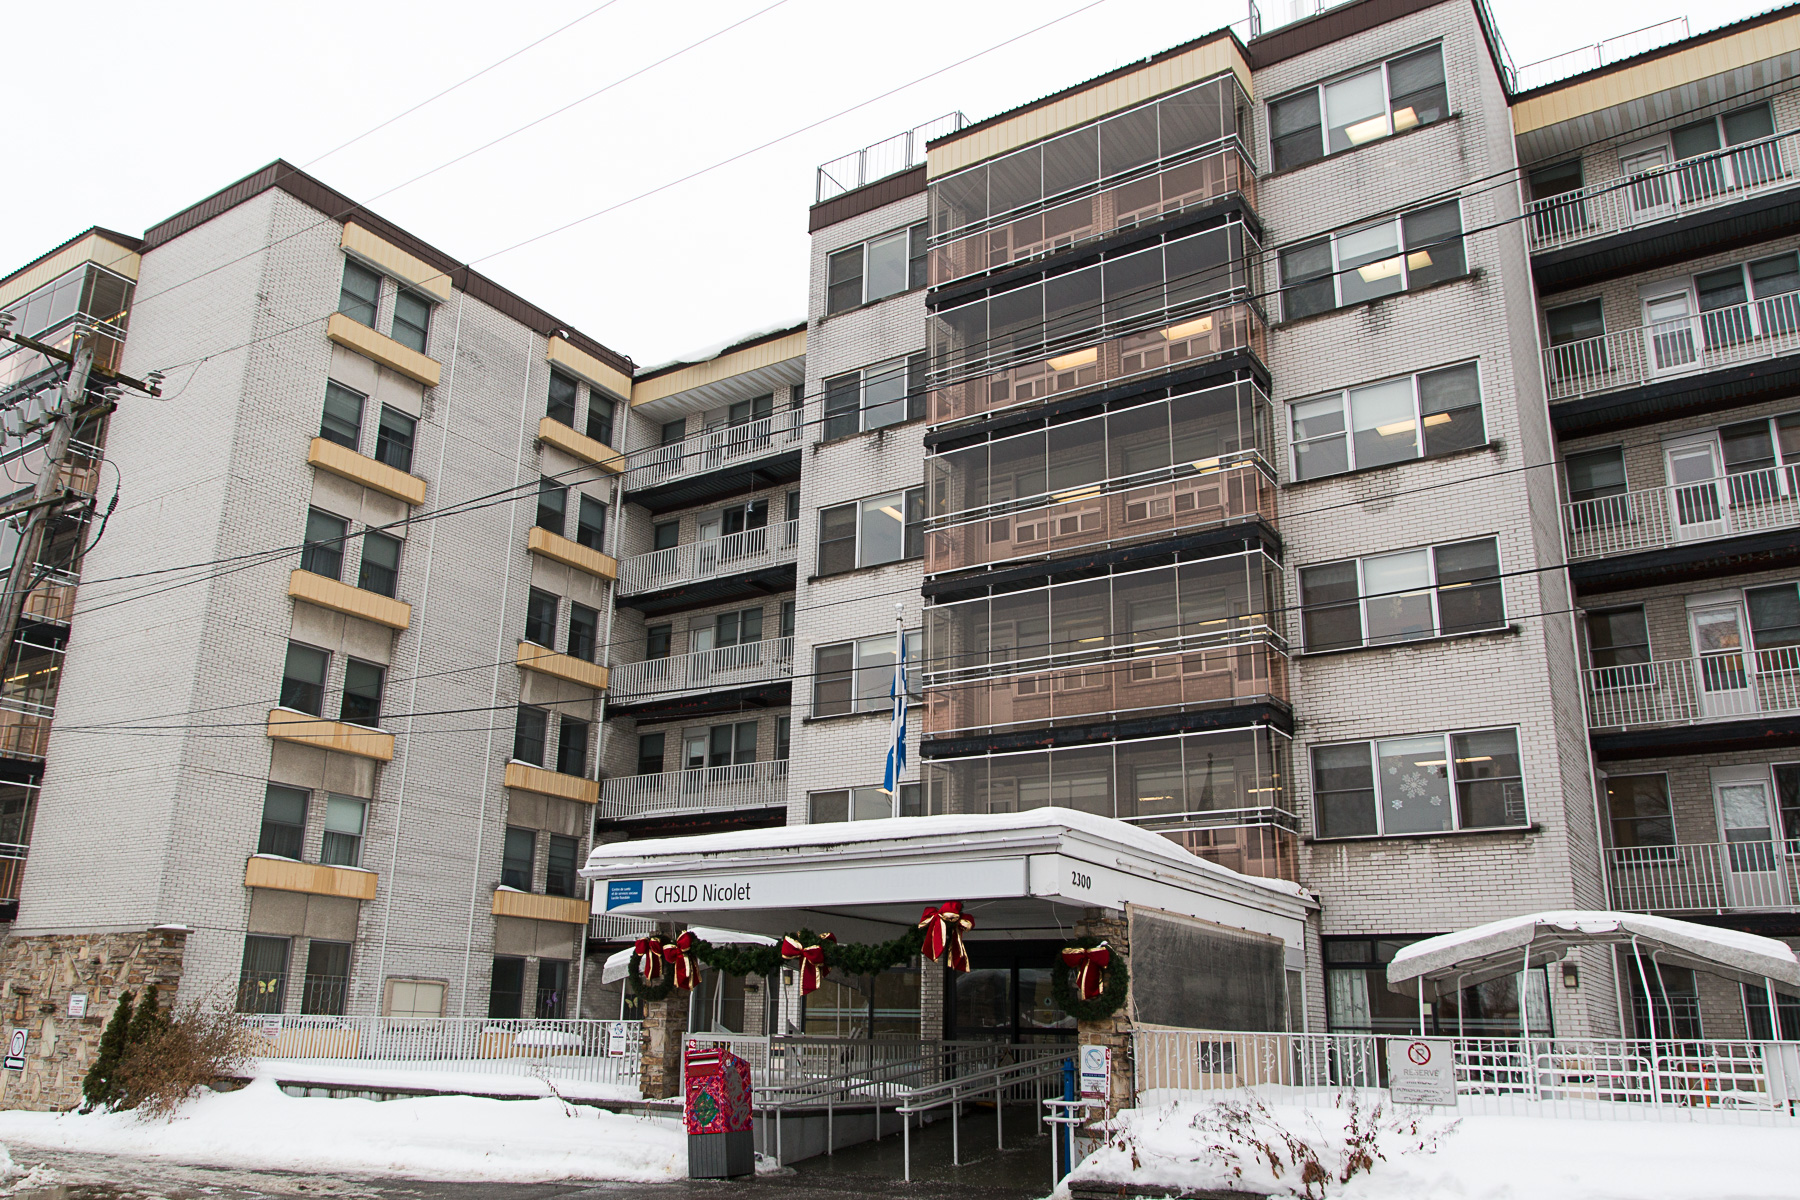 Près de la moitié des Centres d’hébergement de soins longue durée (CHSLD) du Centre intégré universitaire de santé et de services sociaux (CIUSSS) de l’Est-de-l’Île-de-Montréal ont recensé des cas de coronavirus.